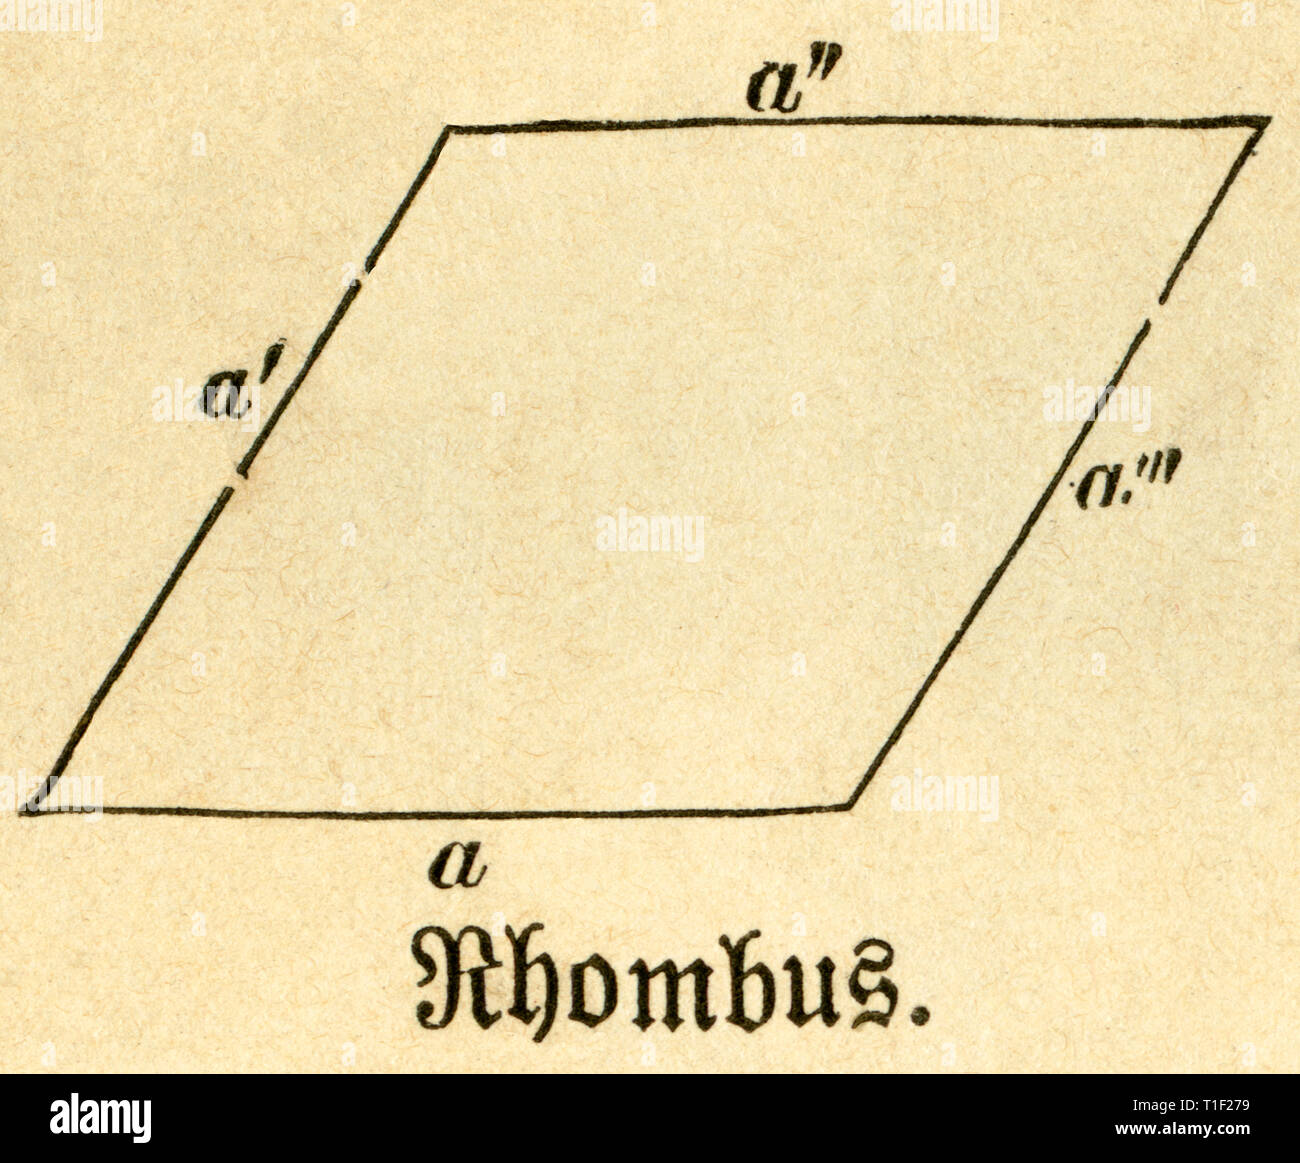 Rombo, illustrazione da: 'Die Welt in Bildern ' (immagini del mondo), pubblicato dal dottor Chr. G. Hottinger in self-publishing, Berlino / Strasburgo, 1881., Additional-Rights-Clearance-Info-Not-Available Foto Stock